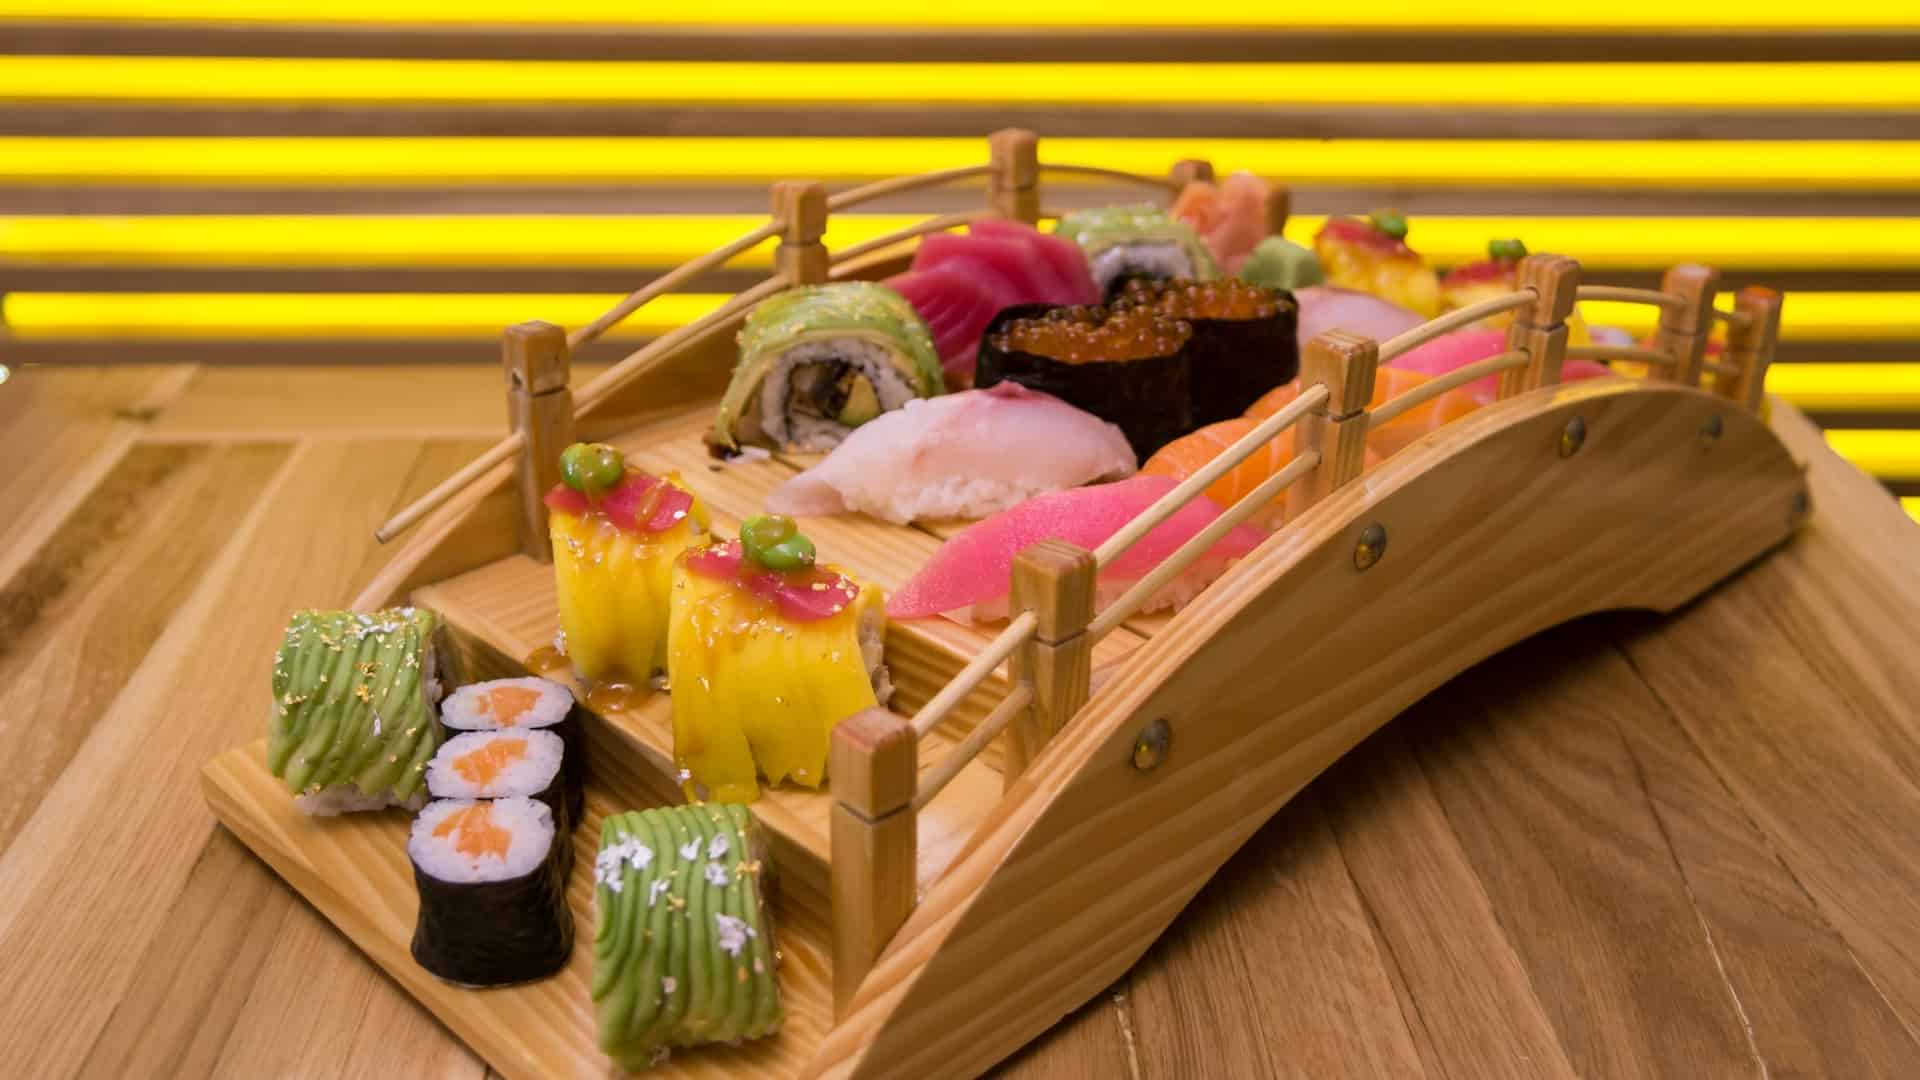 Is it sushi or zushi